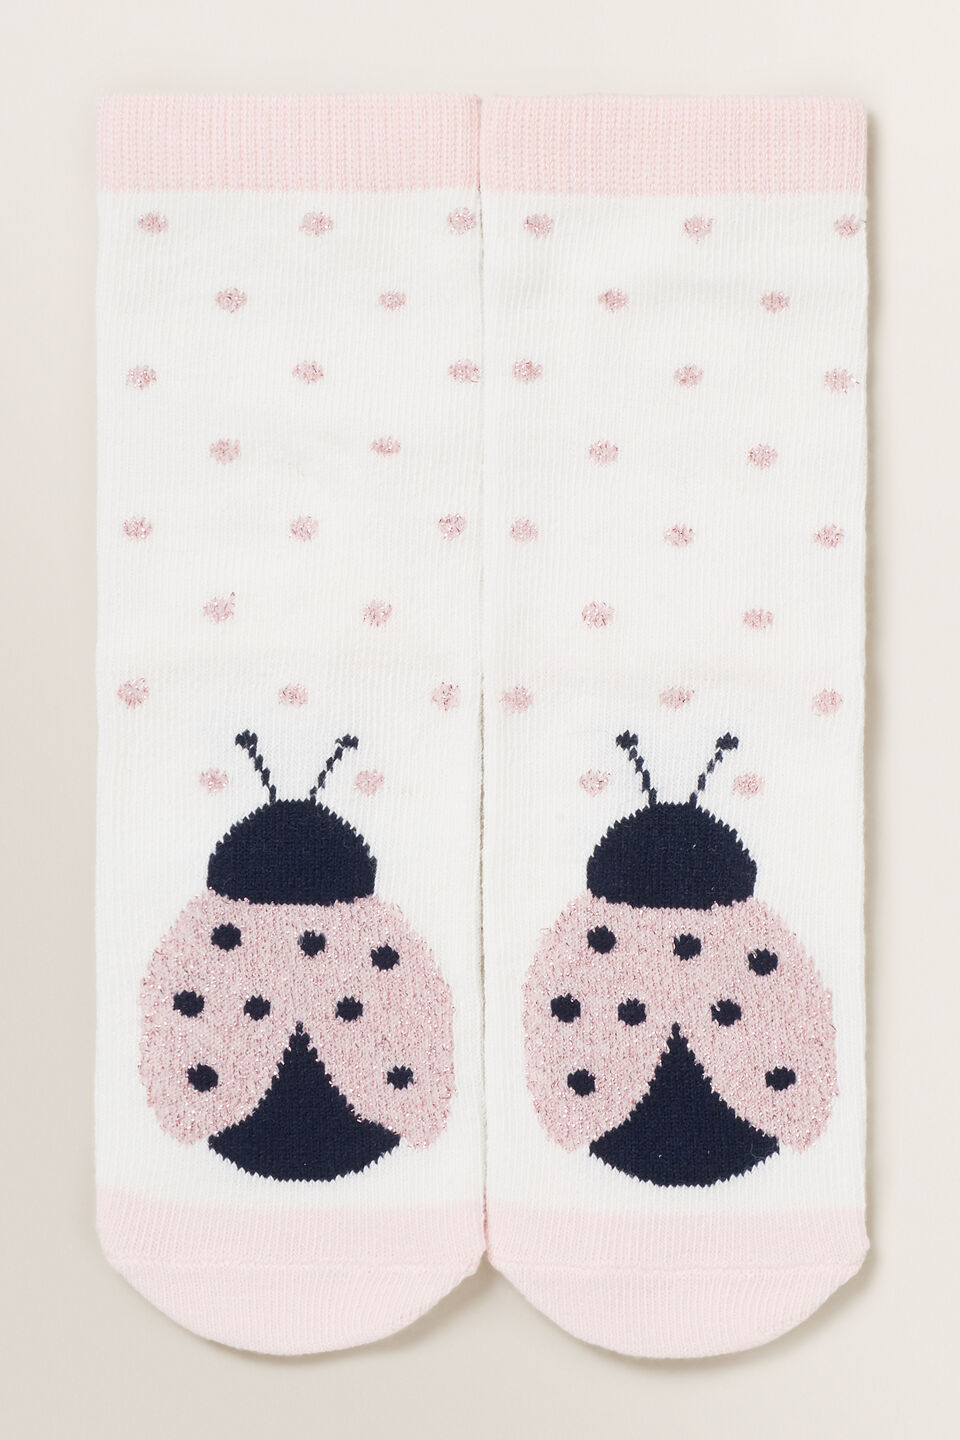 Ladybug Socks  